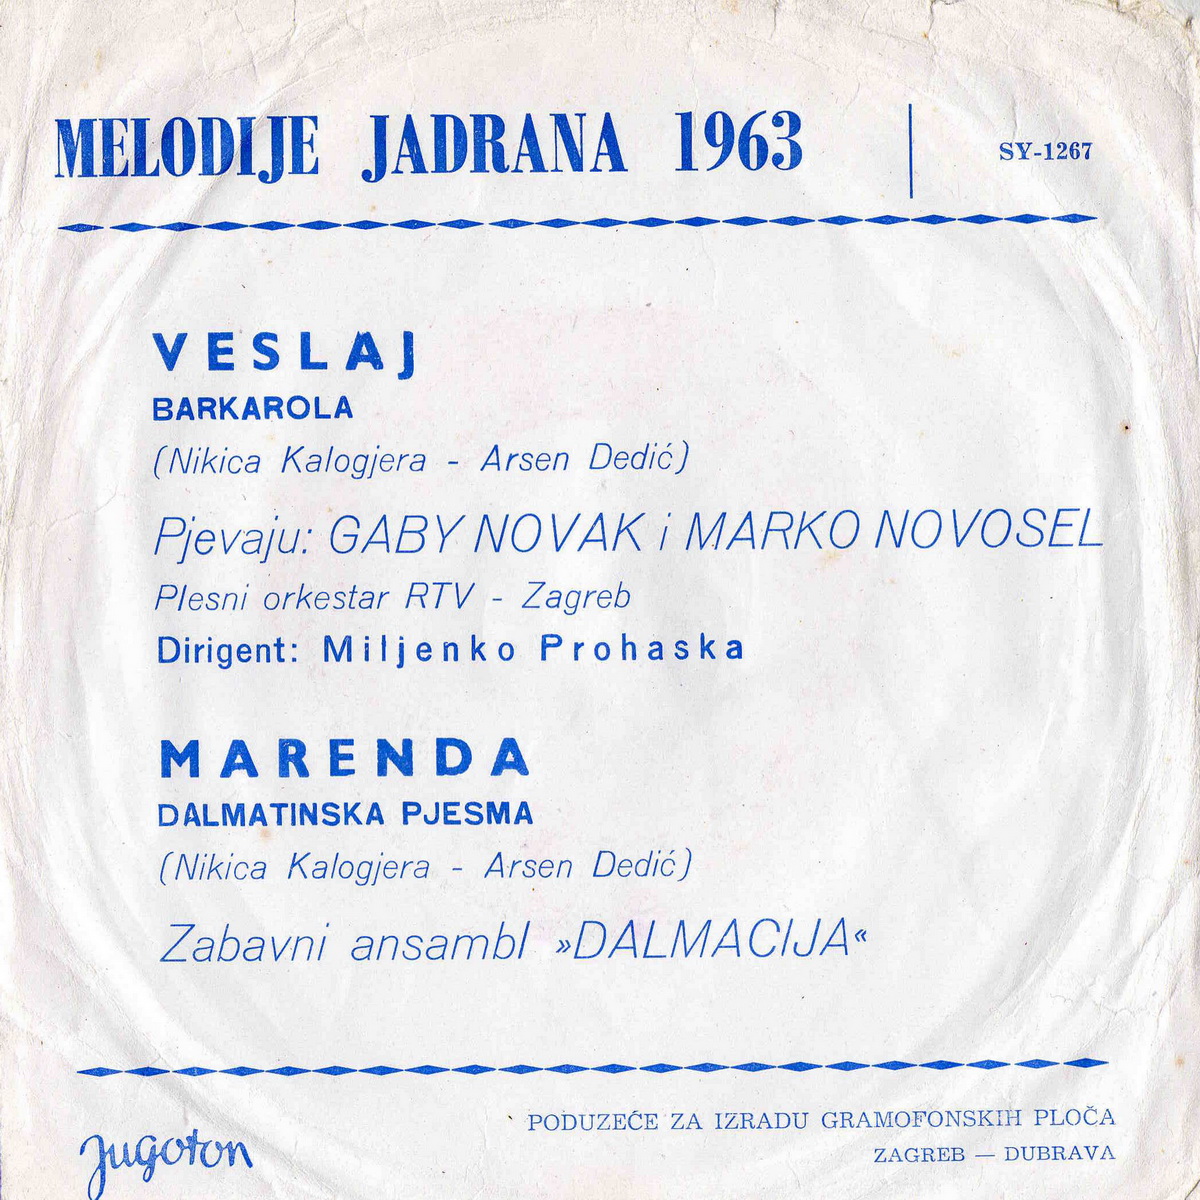 VA 1963 Melodije Jadrana 63 b